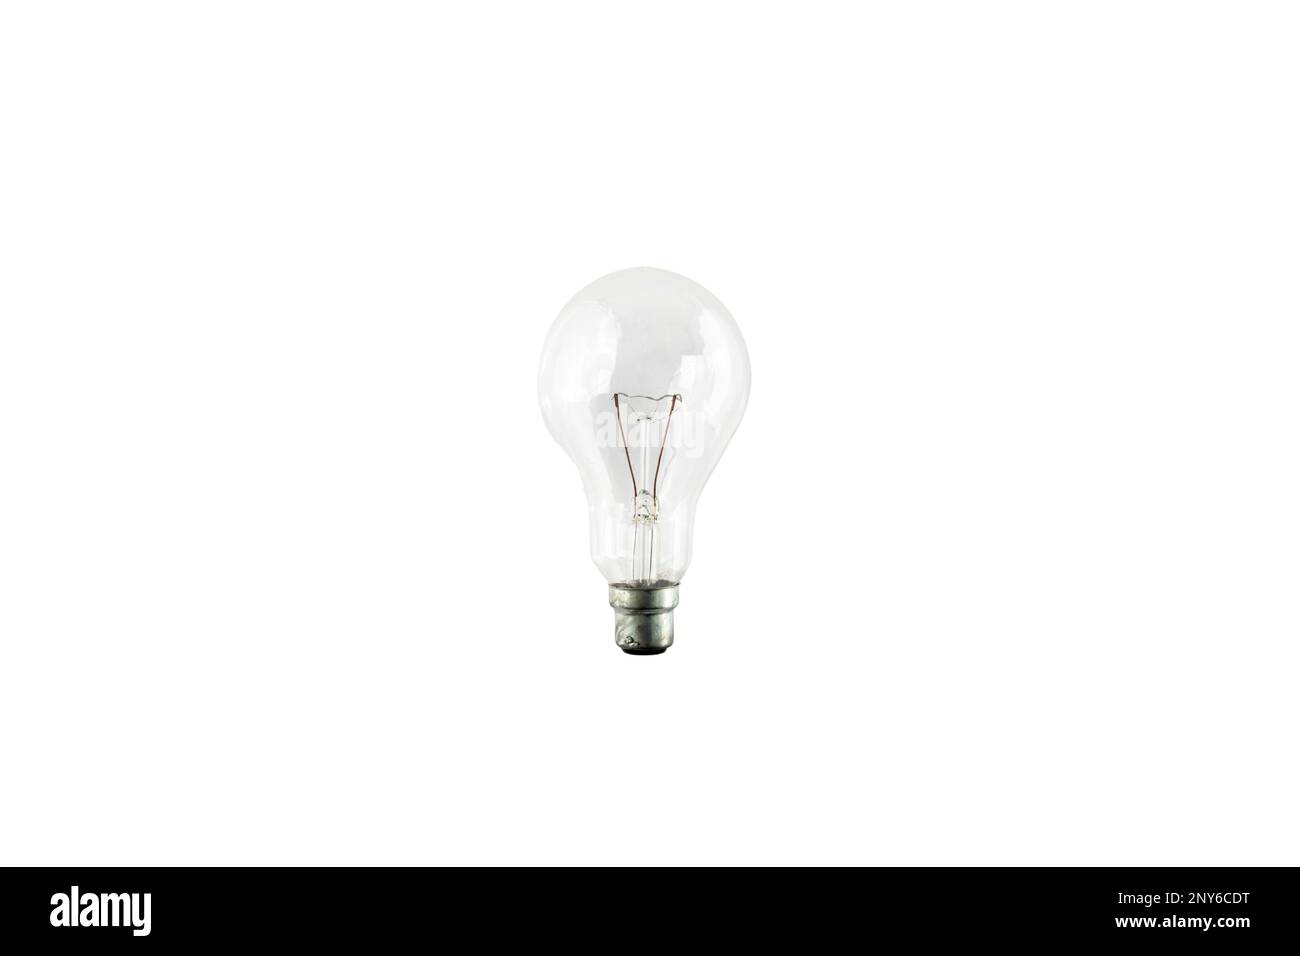 Old light bulb Banque d'images détourées - Alamy